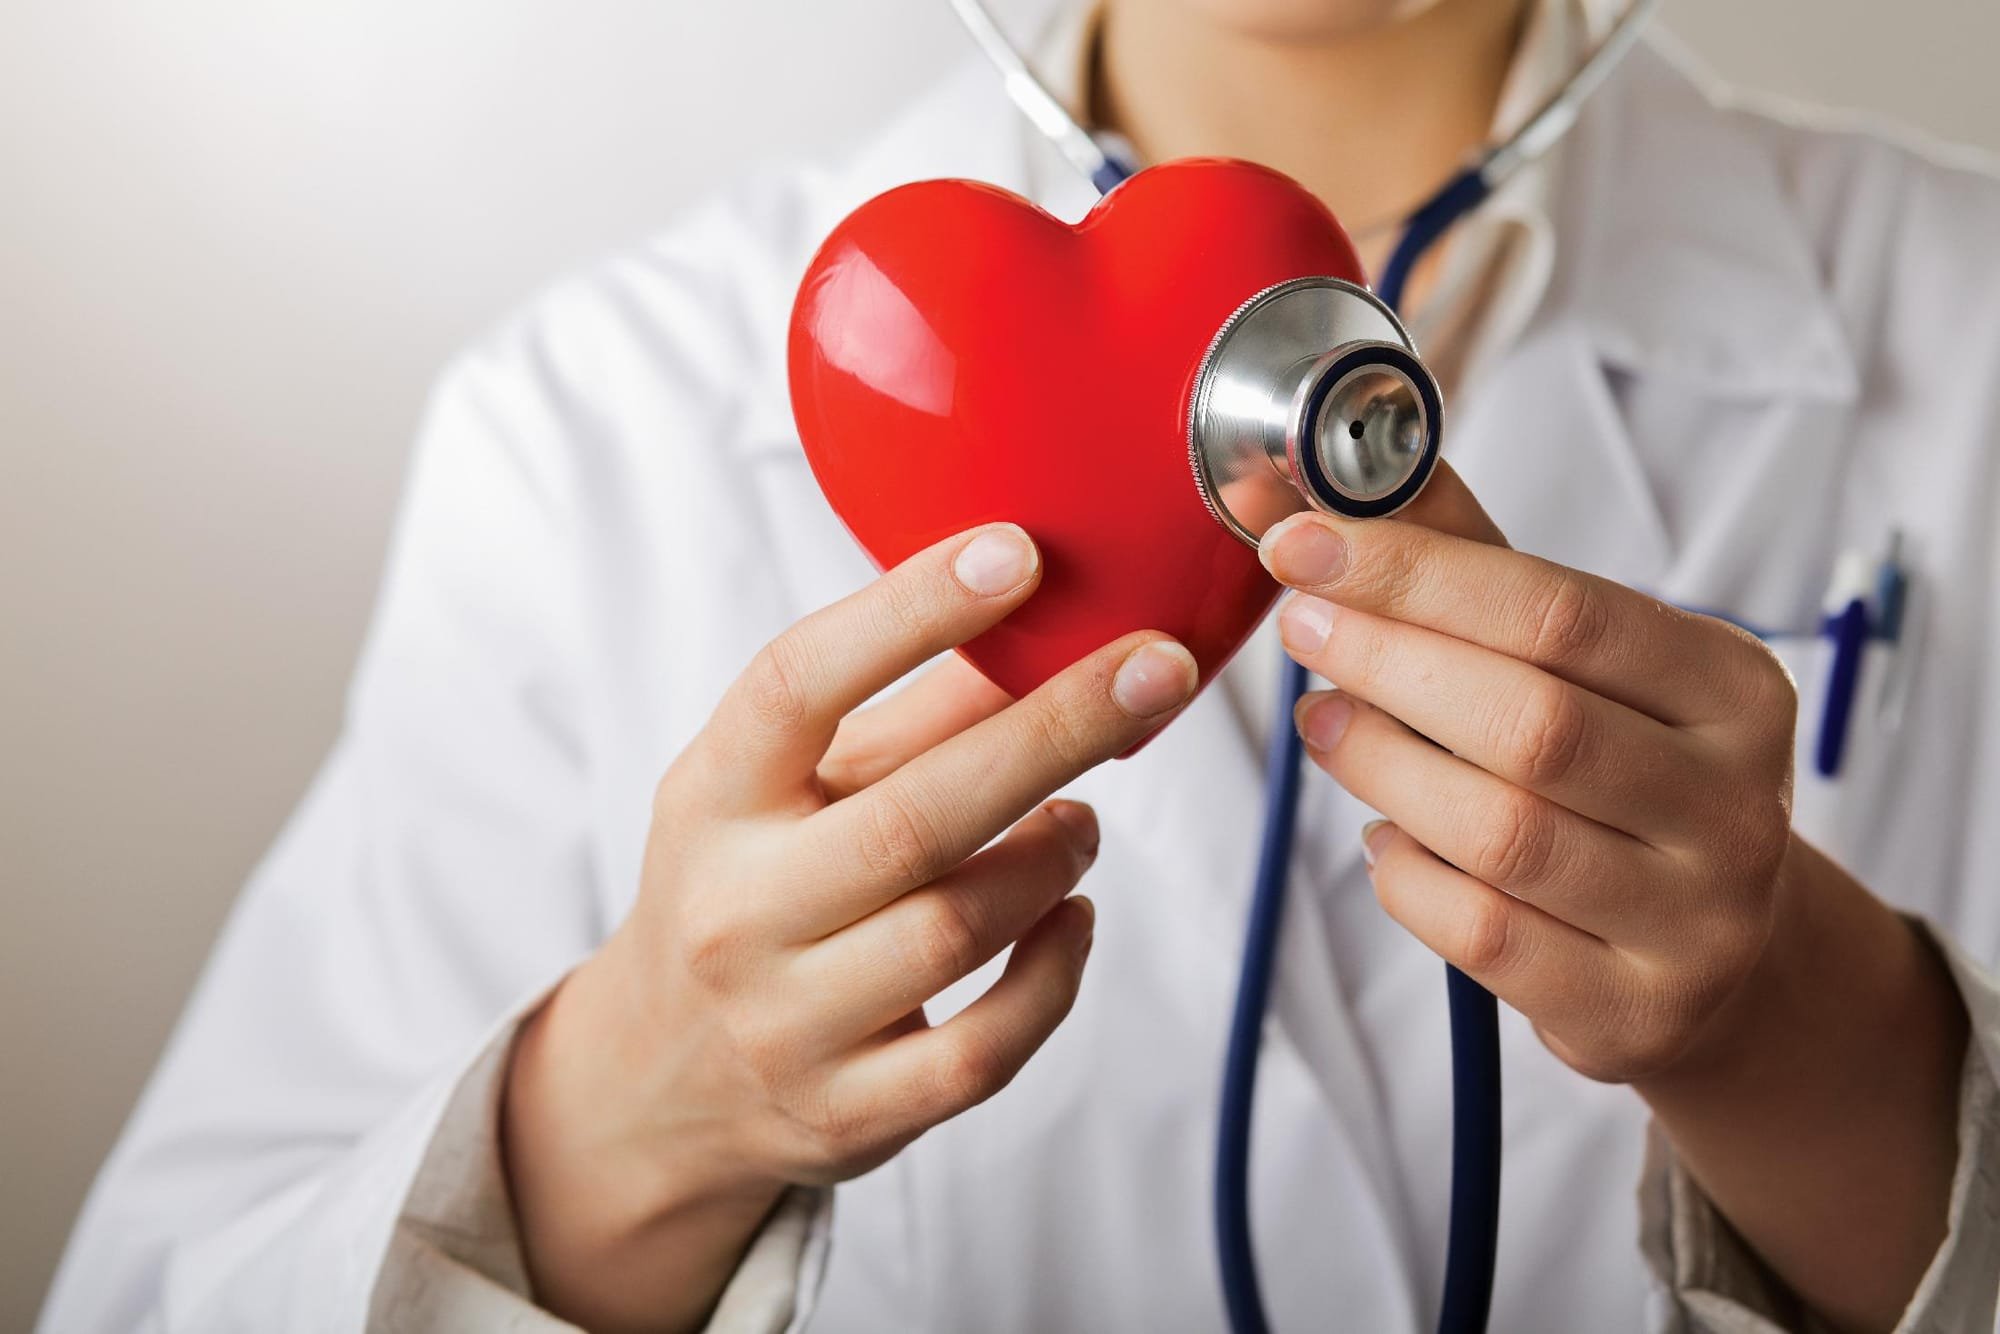 باحثون يحذرون من أطعمة محددة تزيد من خطر الإصابة بقصور القلب بأكثر من 50٪!